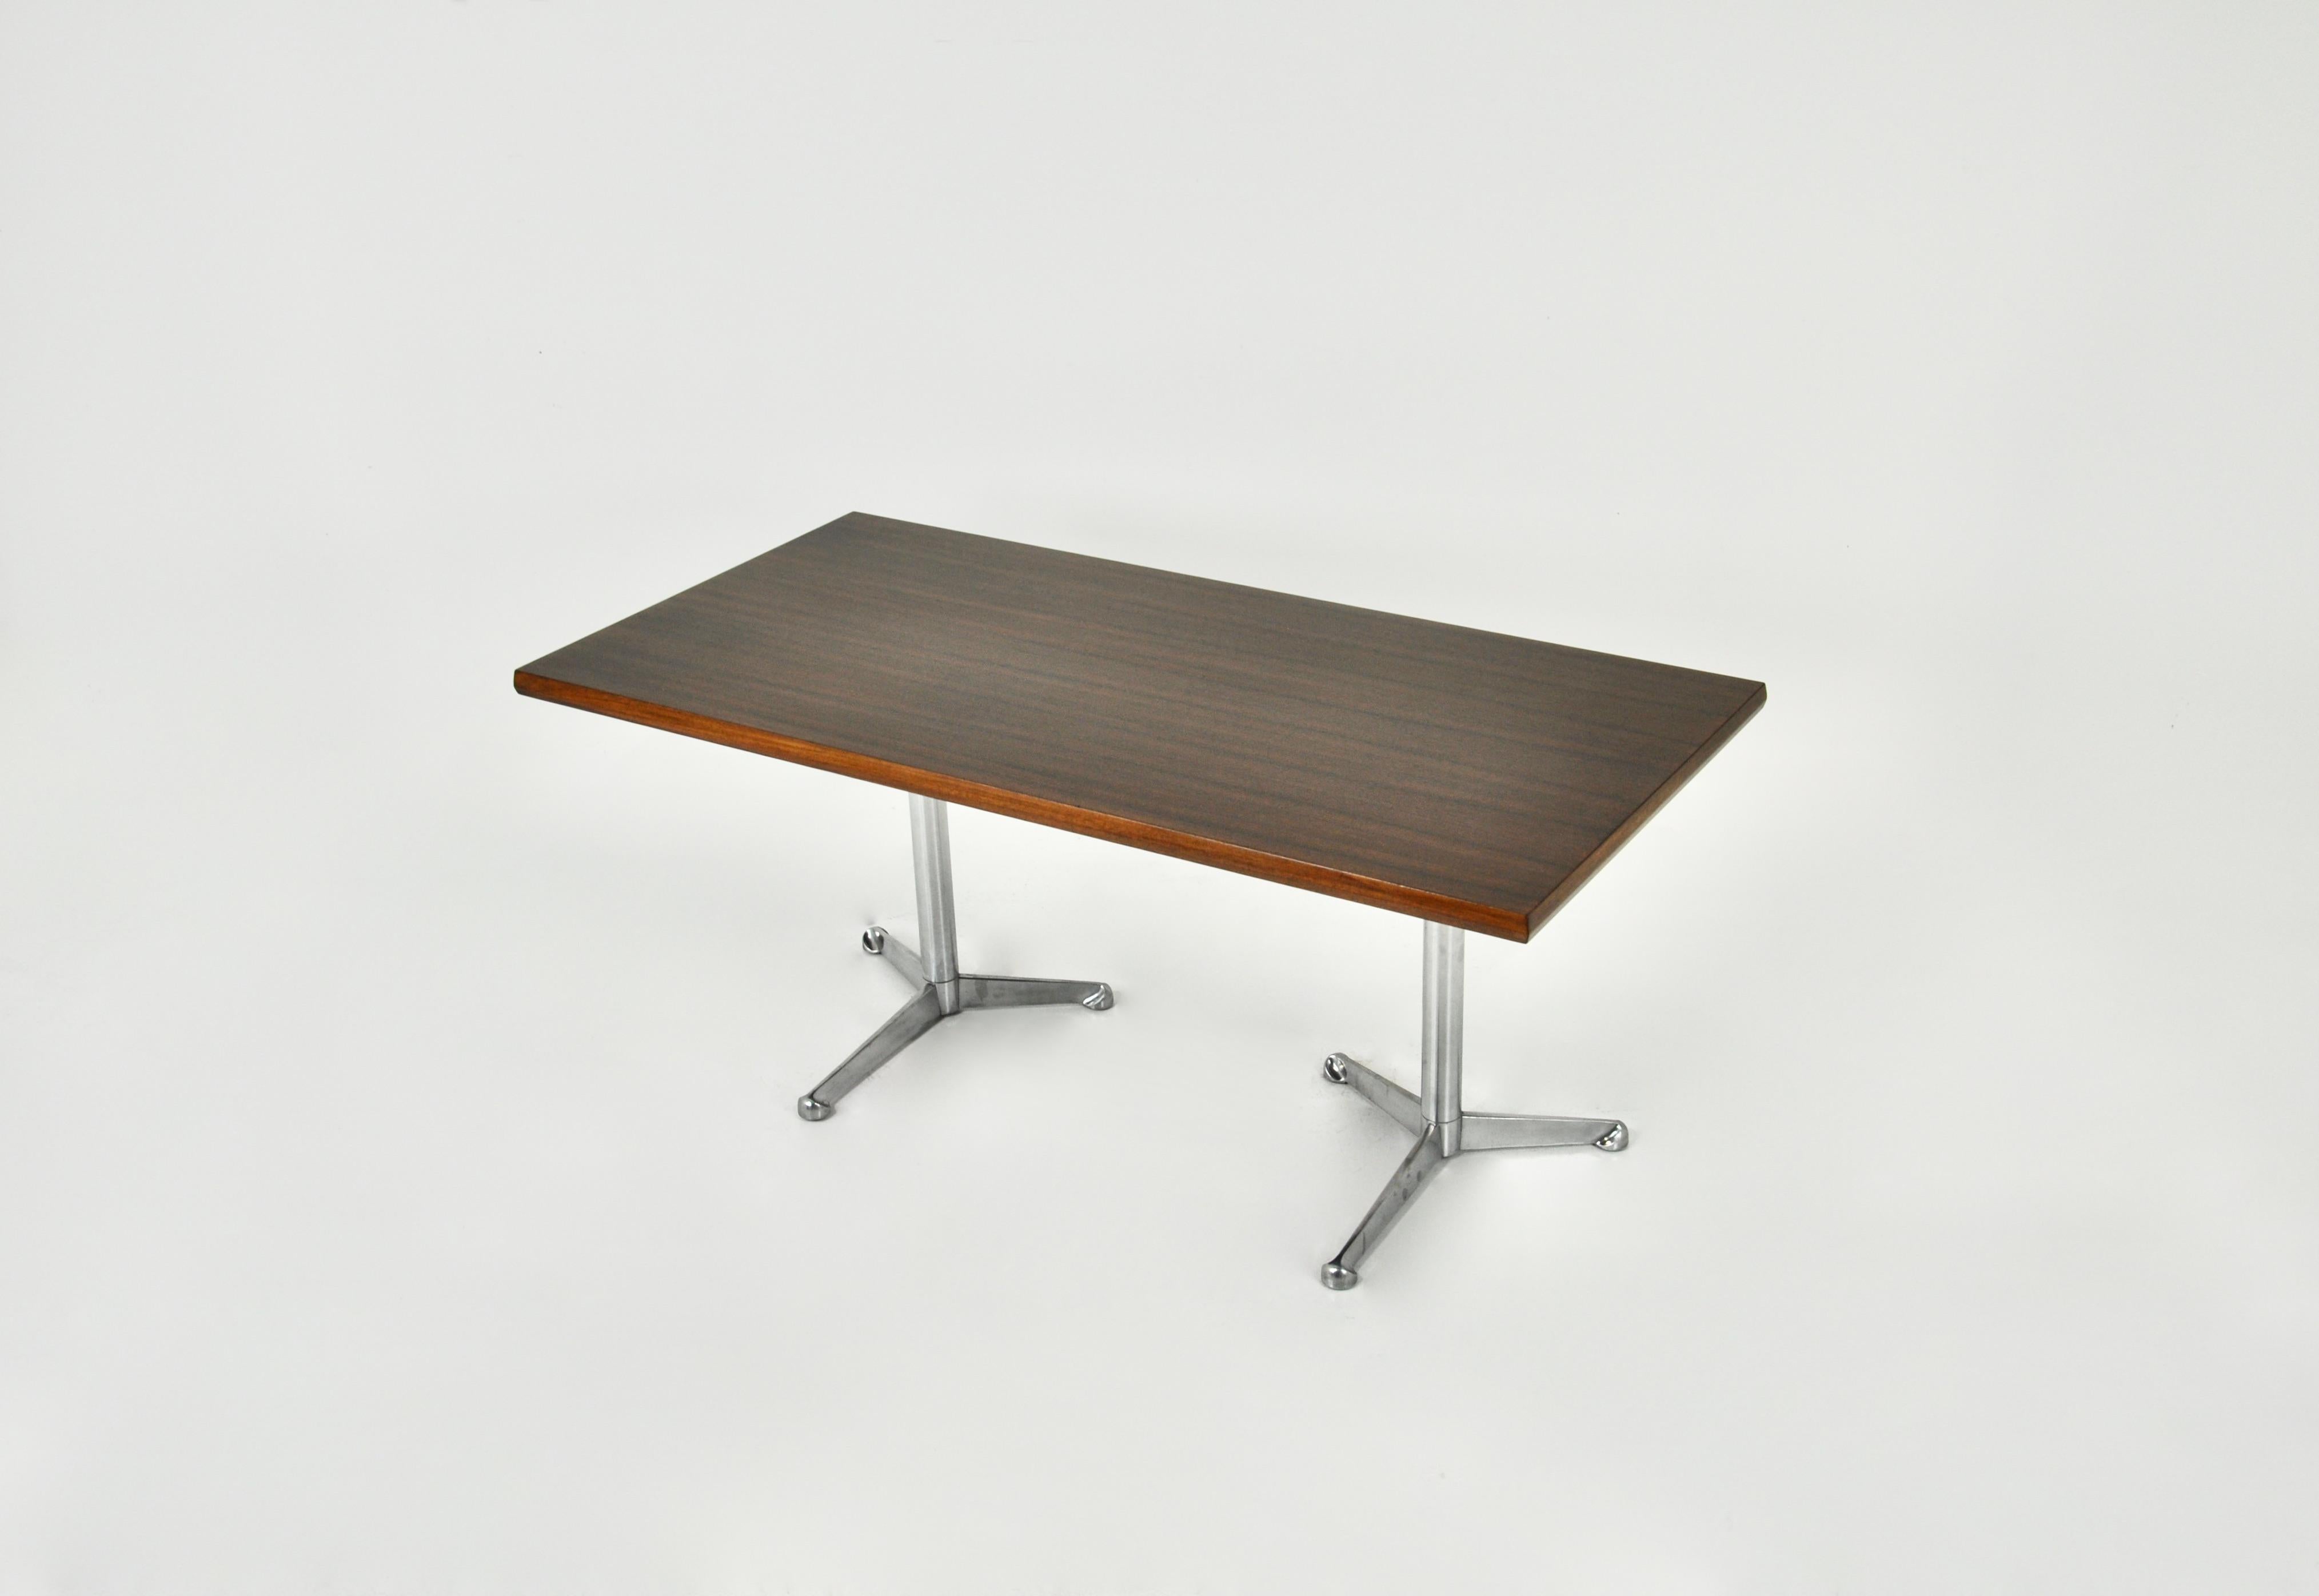 Schreibtisch mit Holz- und Metallbeinen. Tecno gestempelt.  Abnutzung durch Zeit und Alter des Schreibtisches.